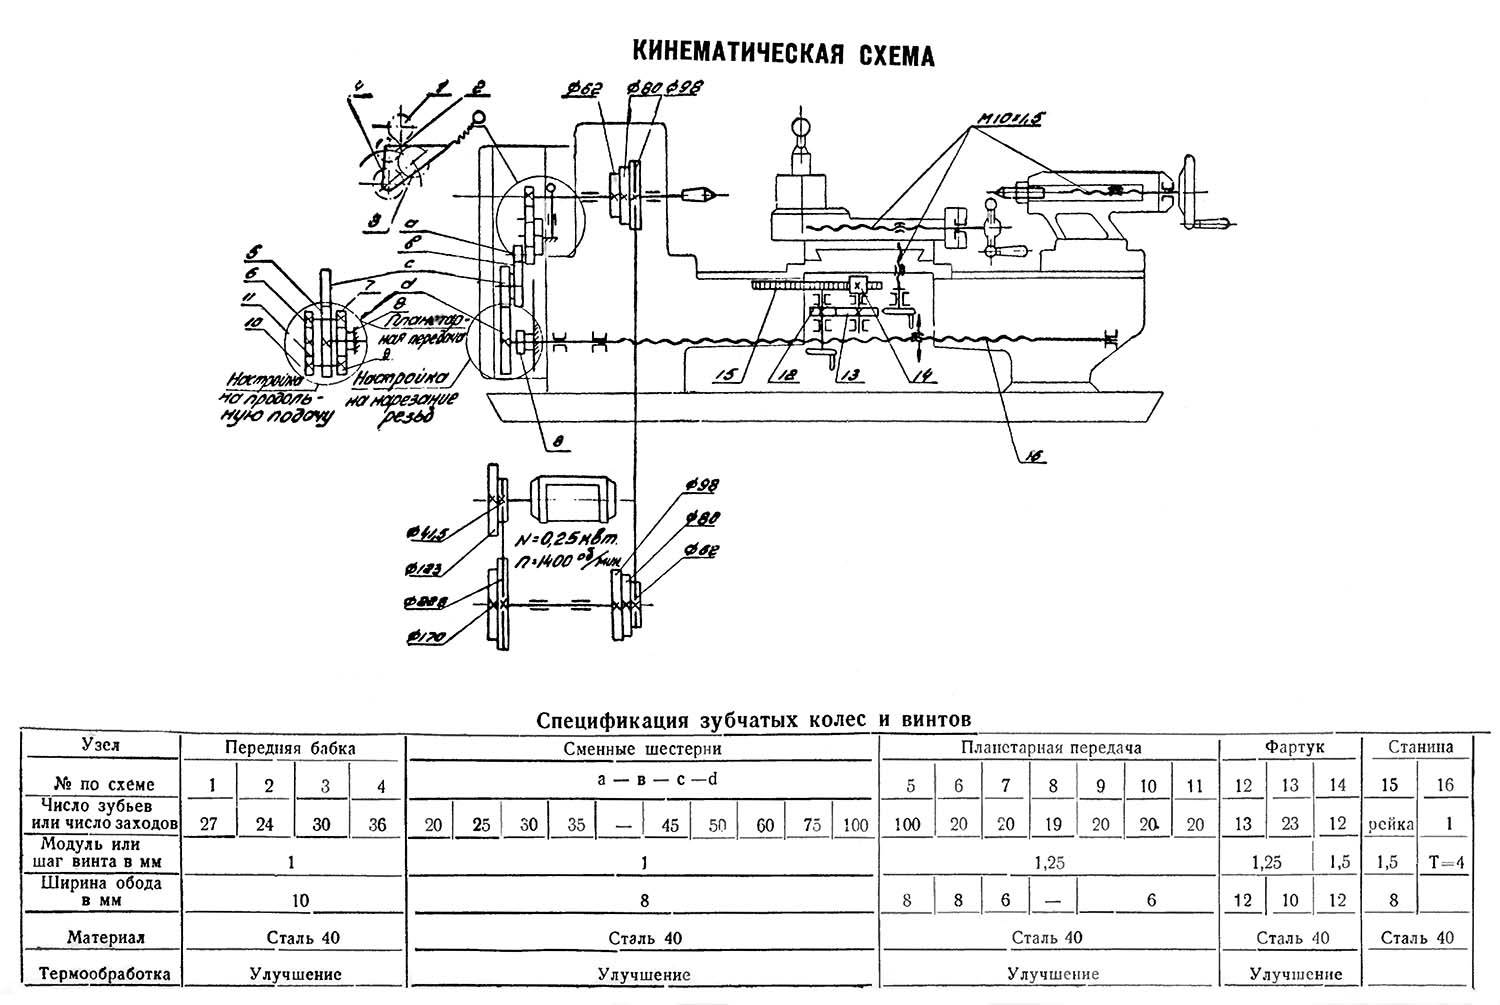 Описание технических характеристик токарного станка тв-4, особенности его эксплуатации